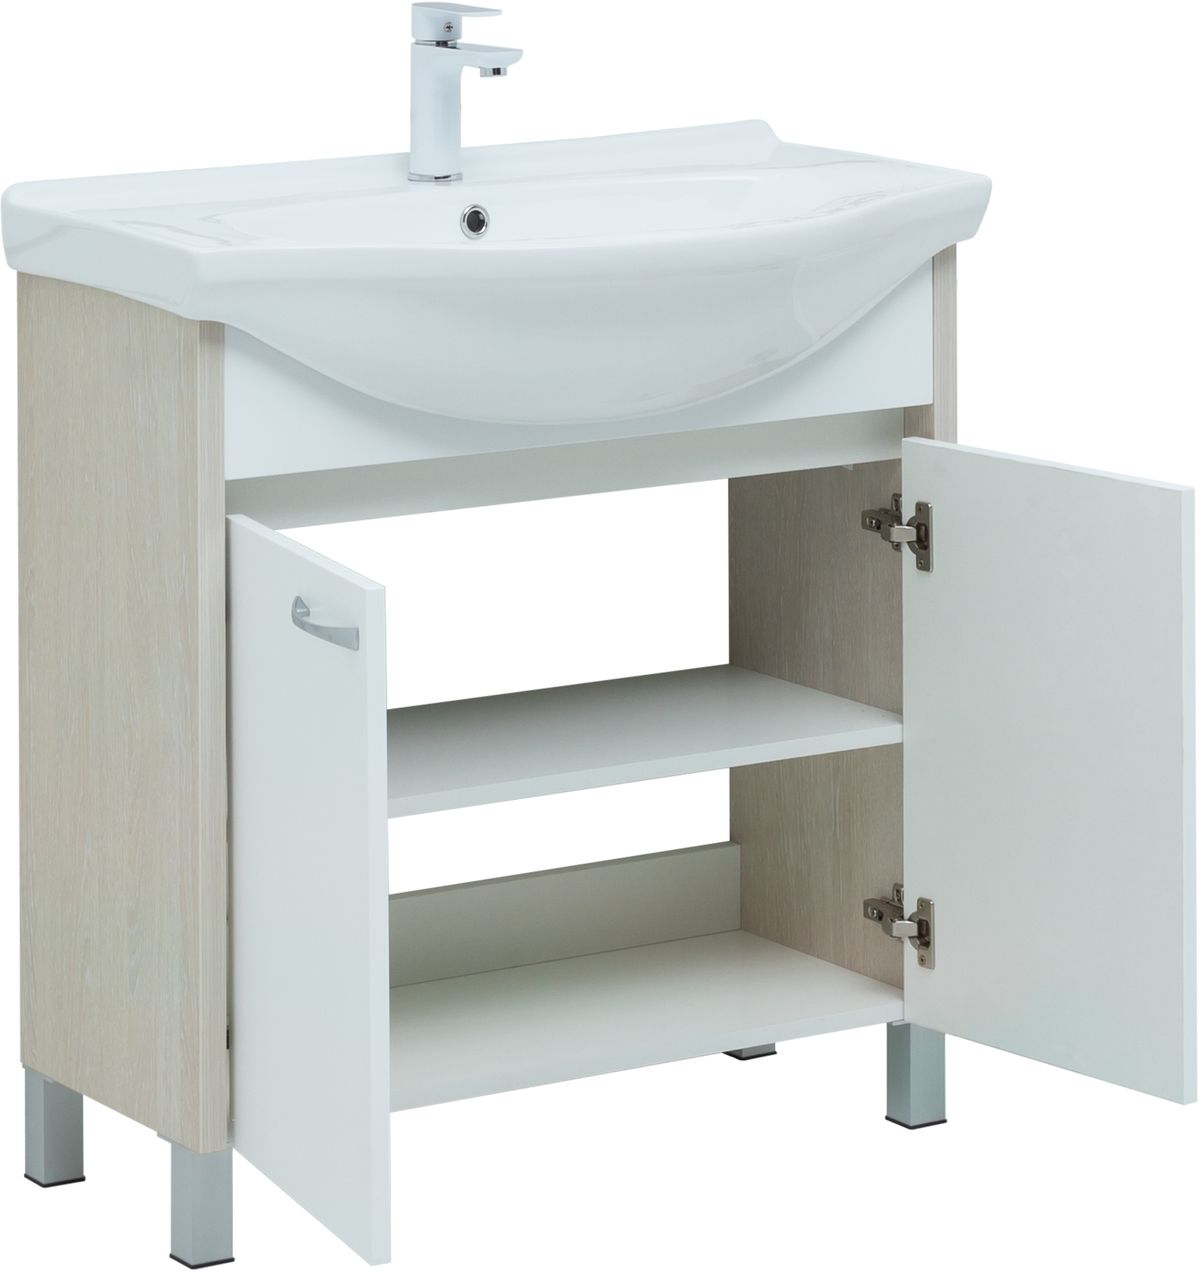 Мебель для ванной Aquanet Донна 81 см напольная 2 дверцы дуб, белый, цвет хром 274170 - фото 2